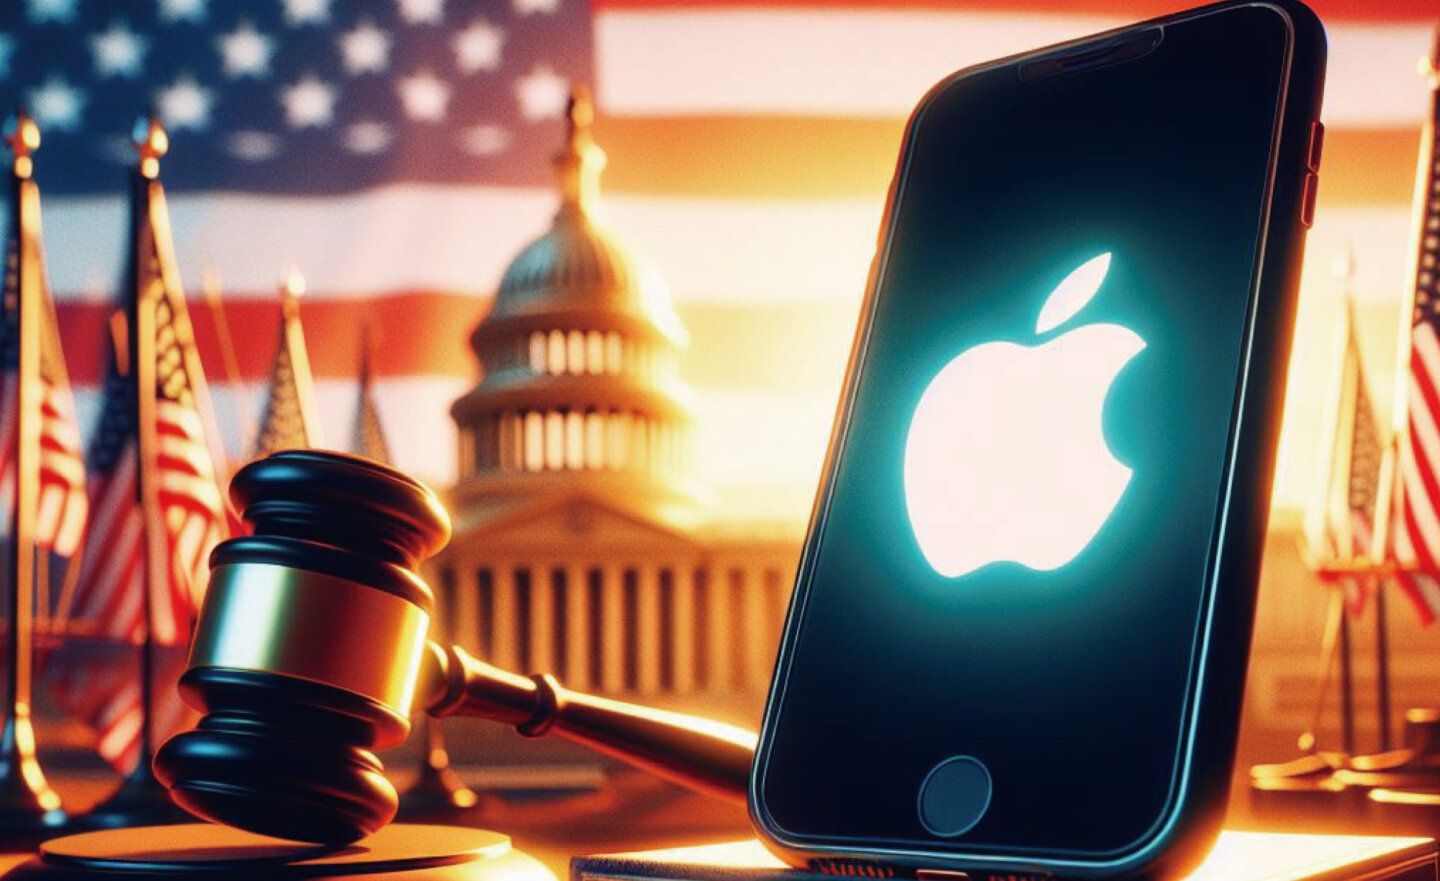 傳出美國司法部準備向 Apple 蘋果提起反壟斷訴訟